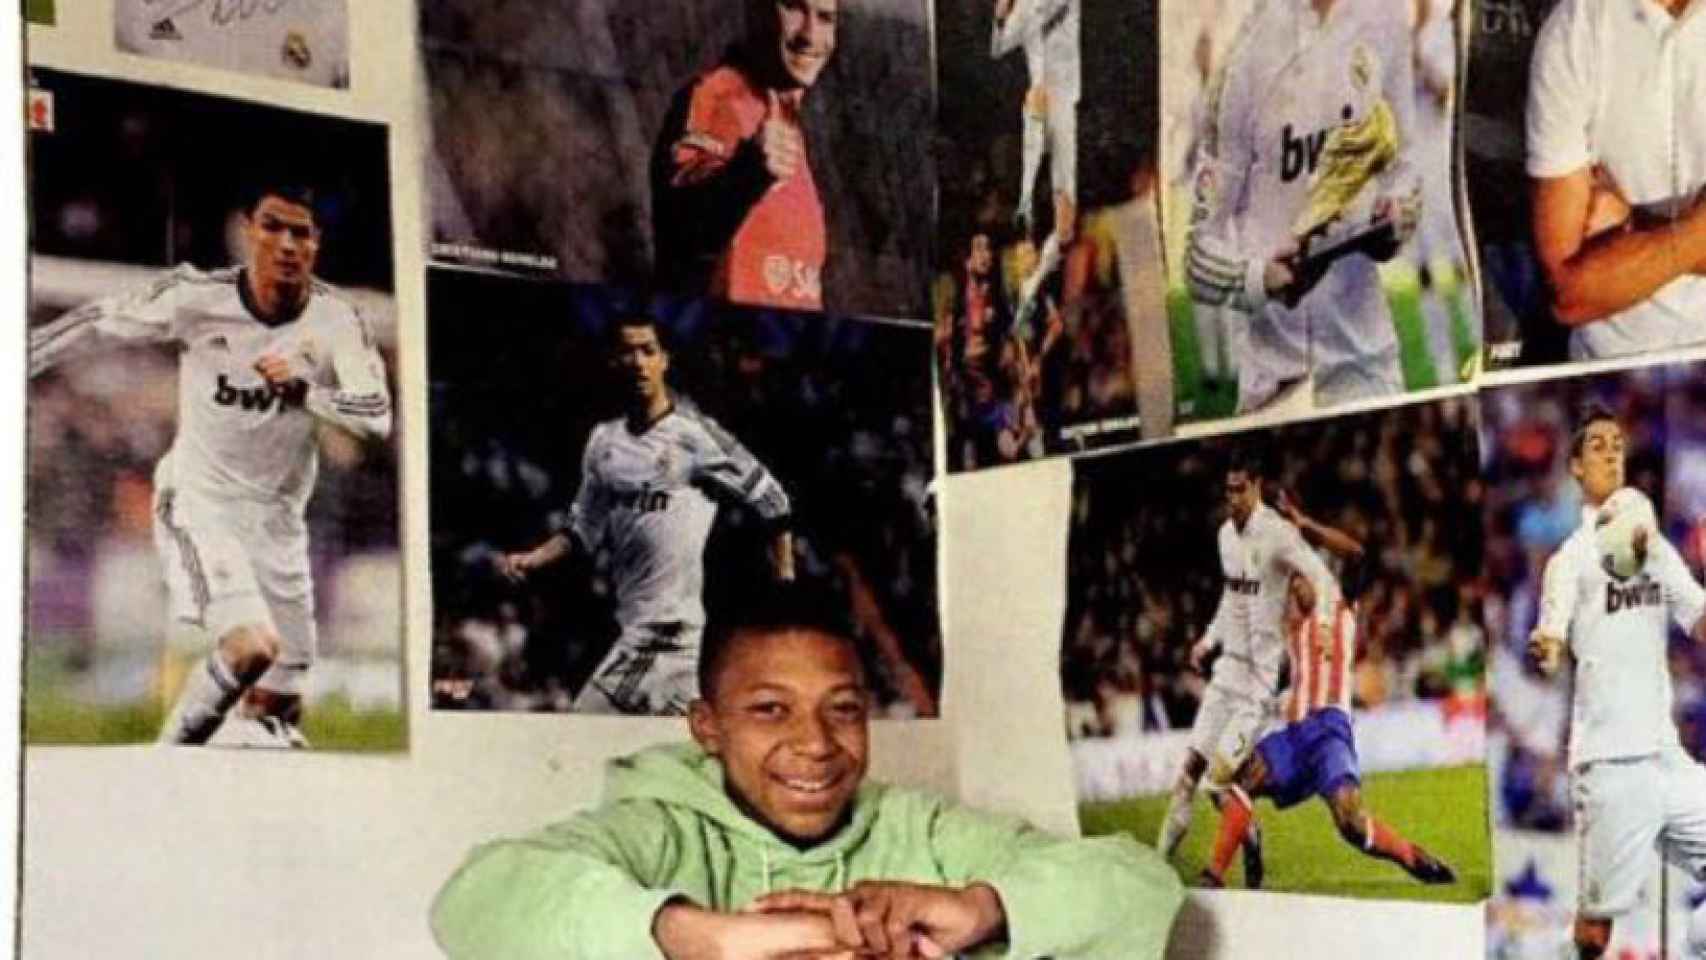 Kylian Mbappé en su habitación rodeado de fotos de Cristiano. Foto: L'Équipe Magazine